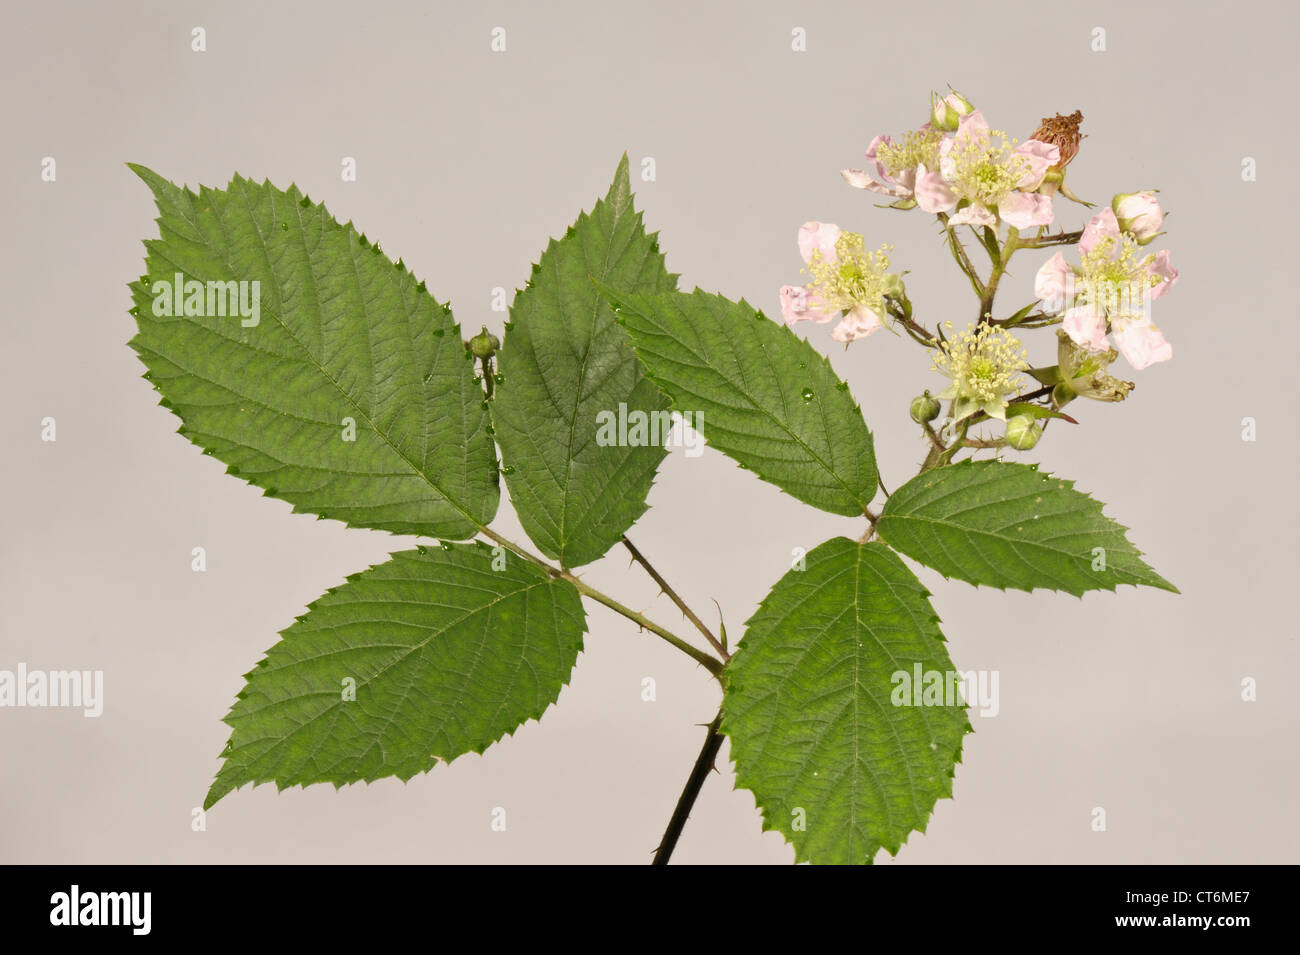 Blackberry o zarza Rubus fruticosus hojas y flores. Foto de stock